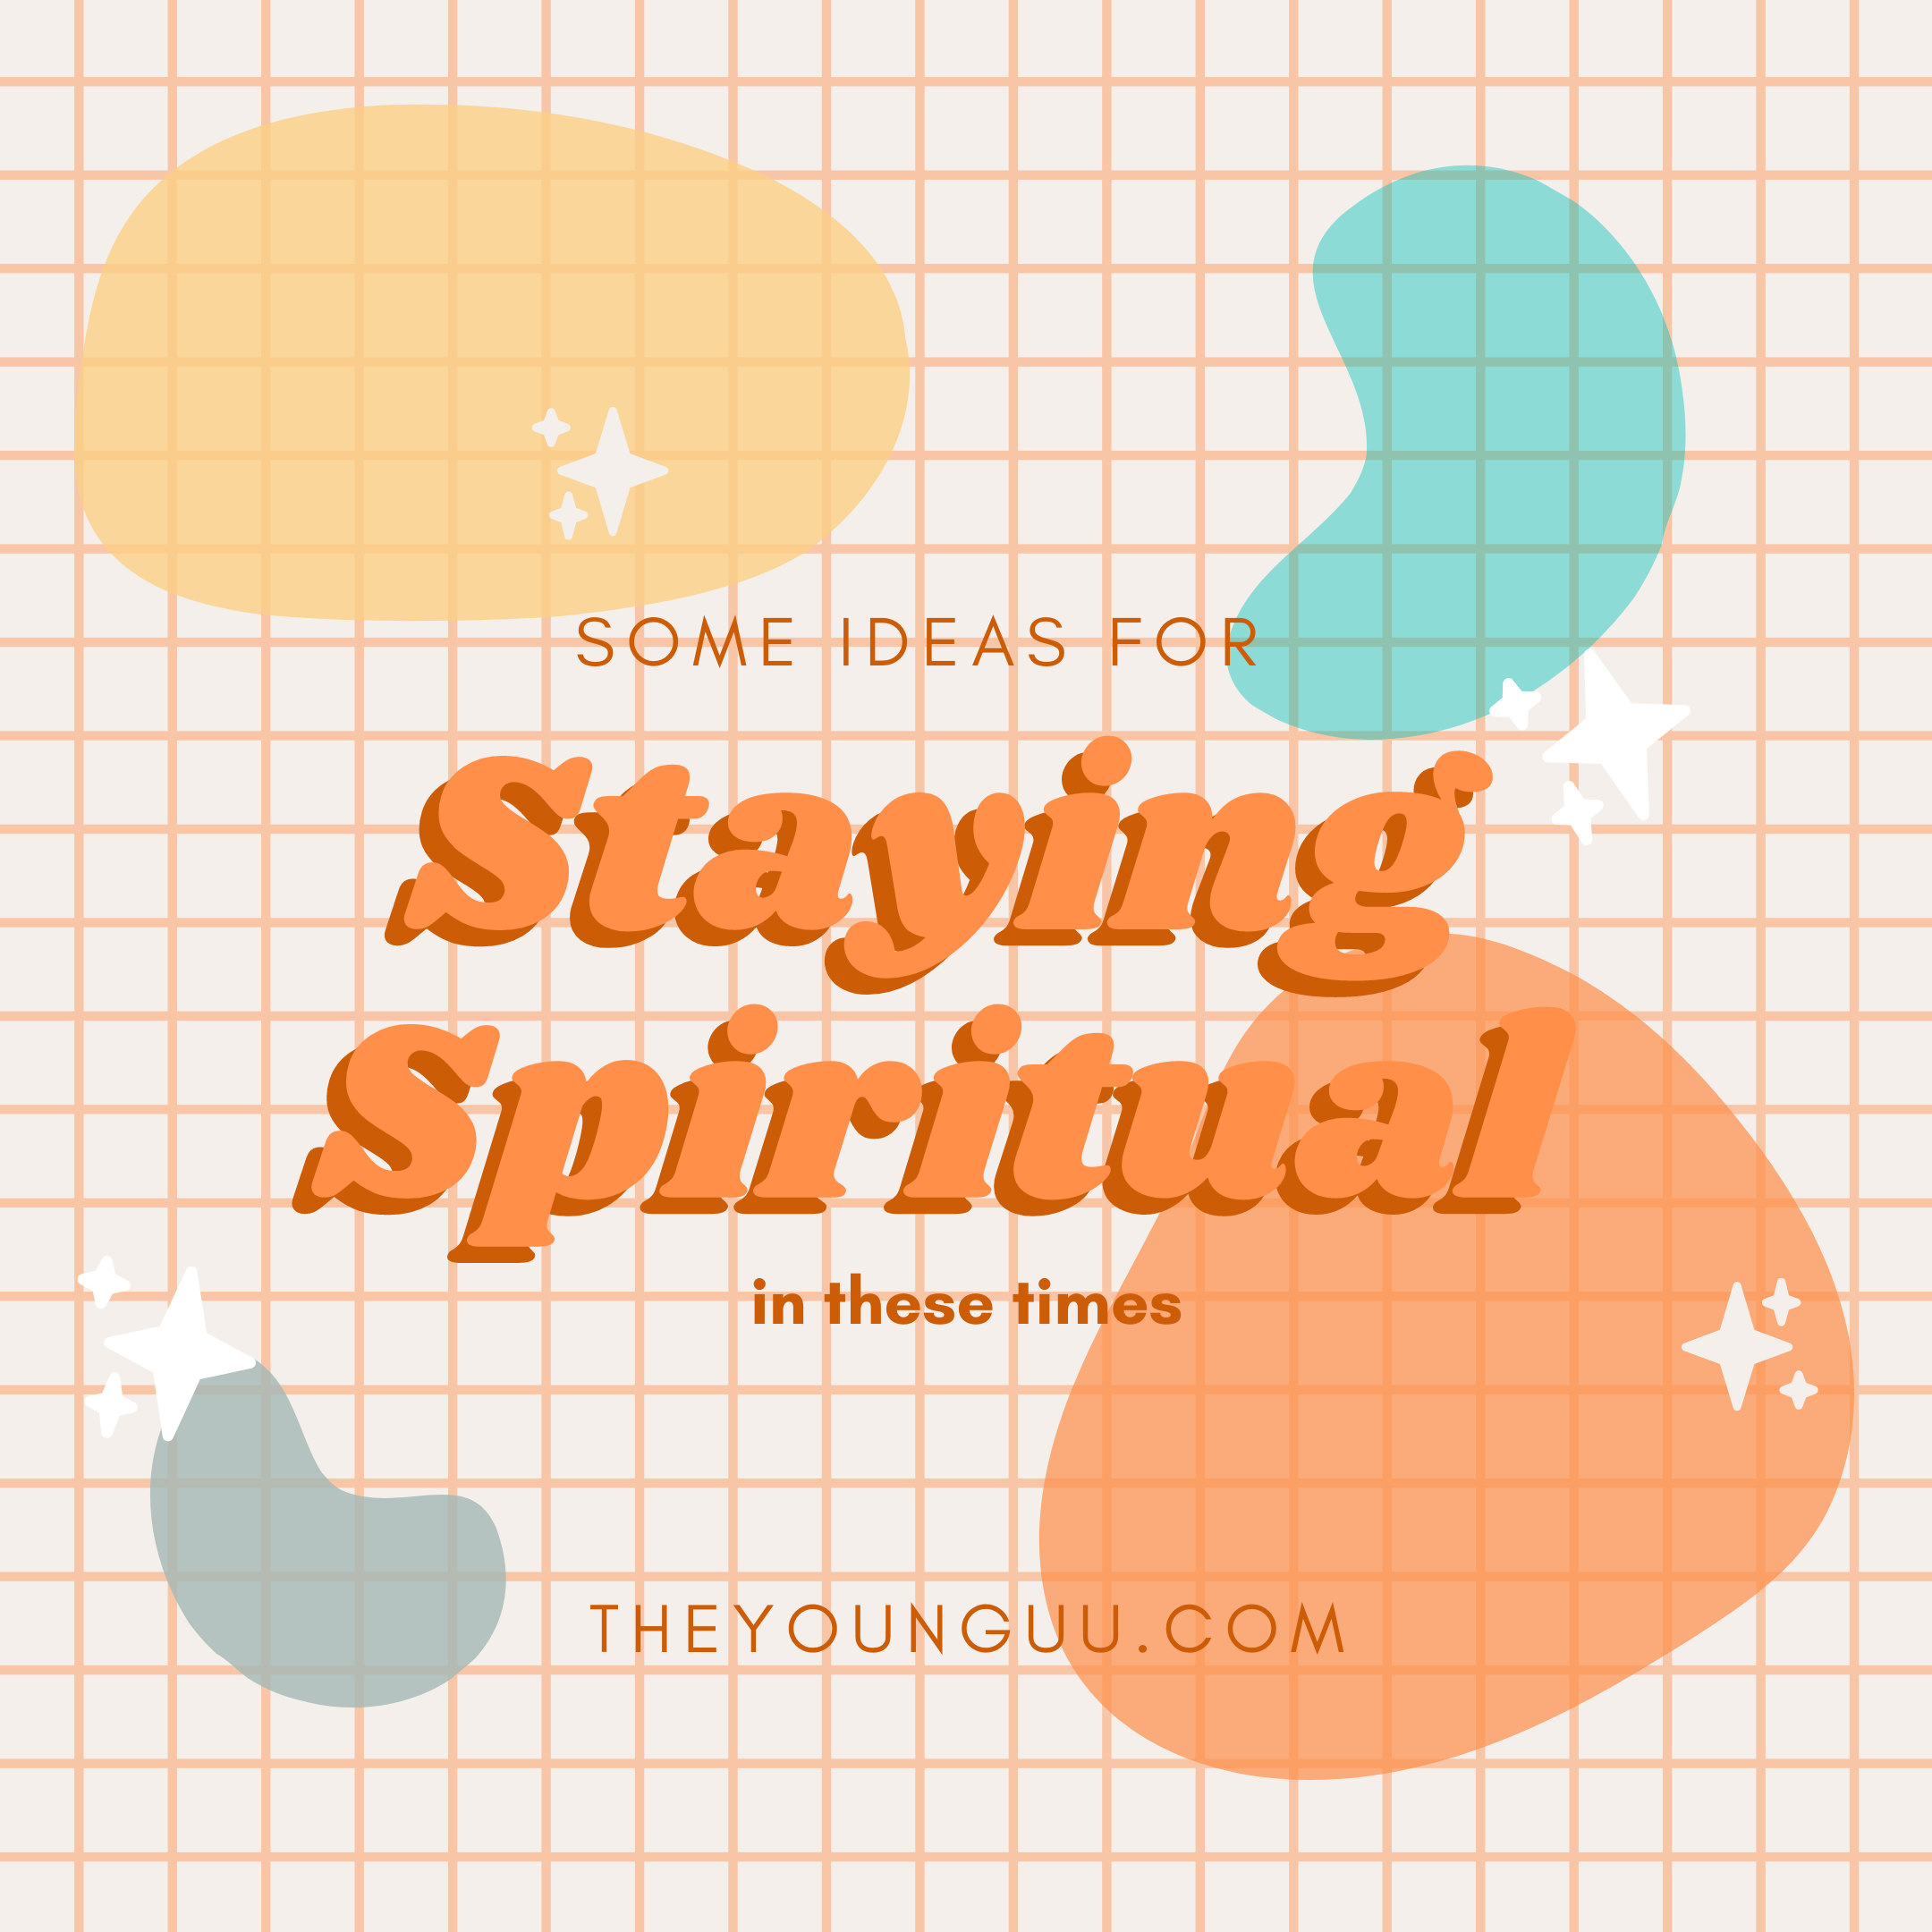 Staying Spiritual